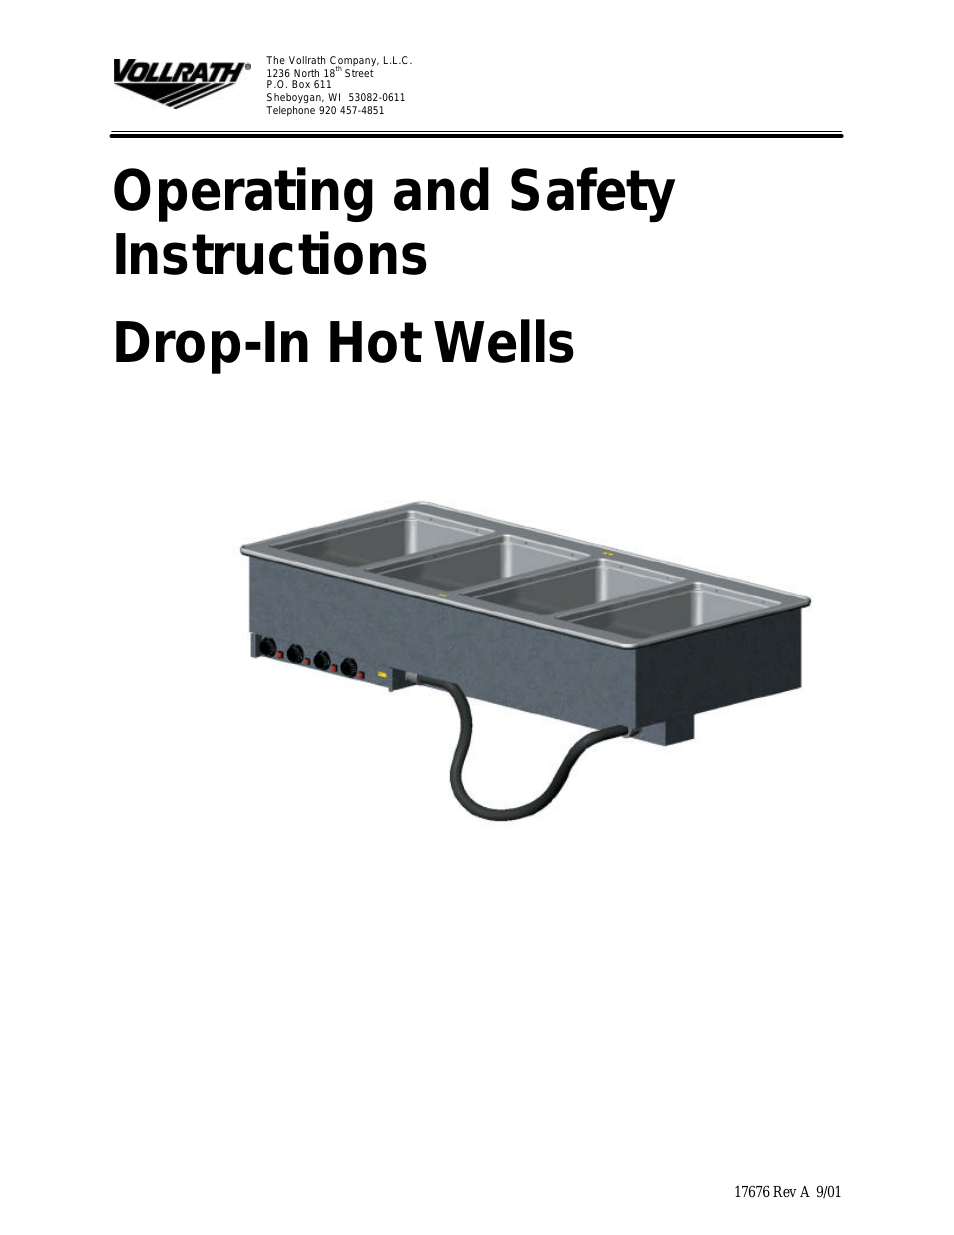 Drop-In Hot Wells